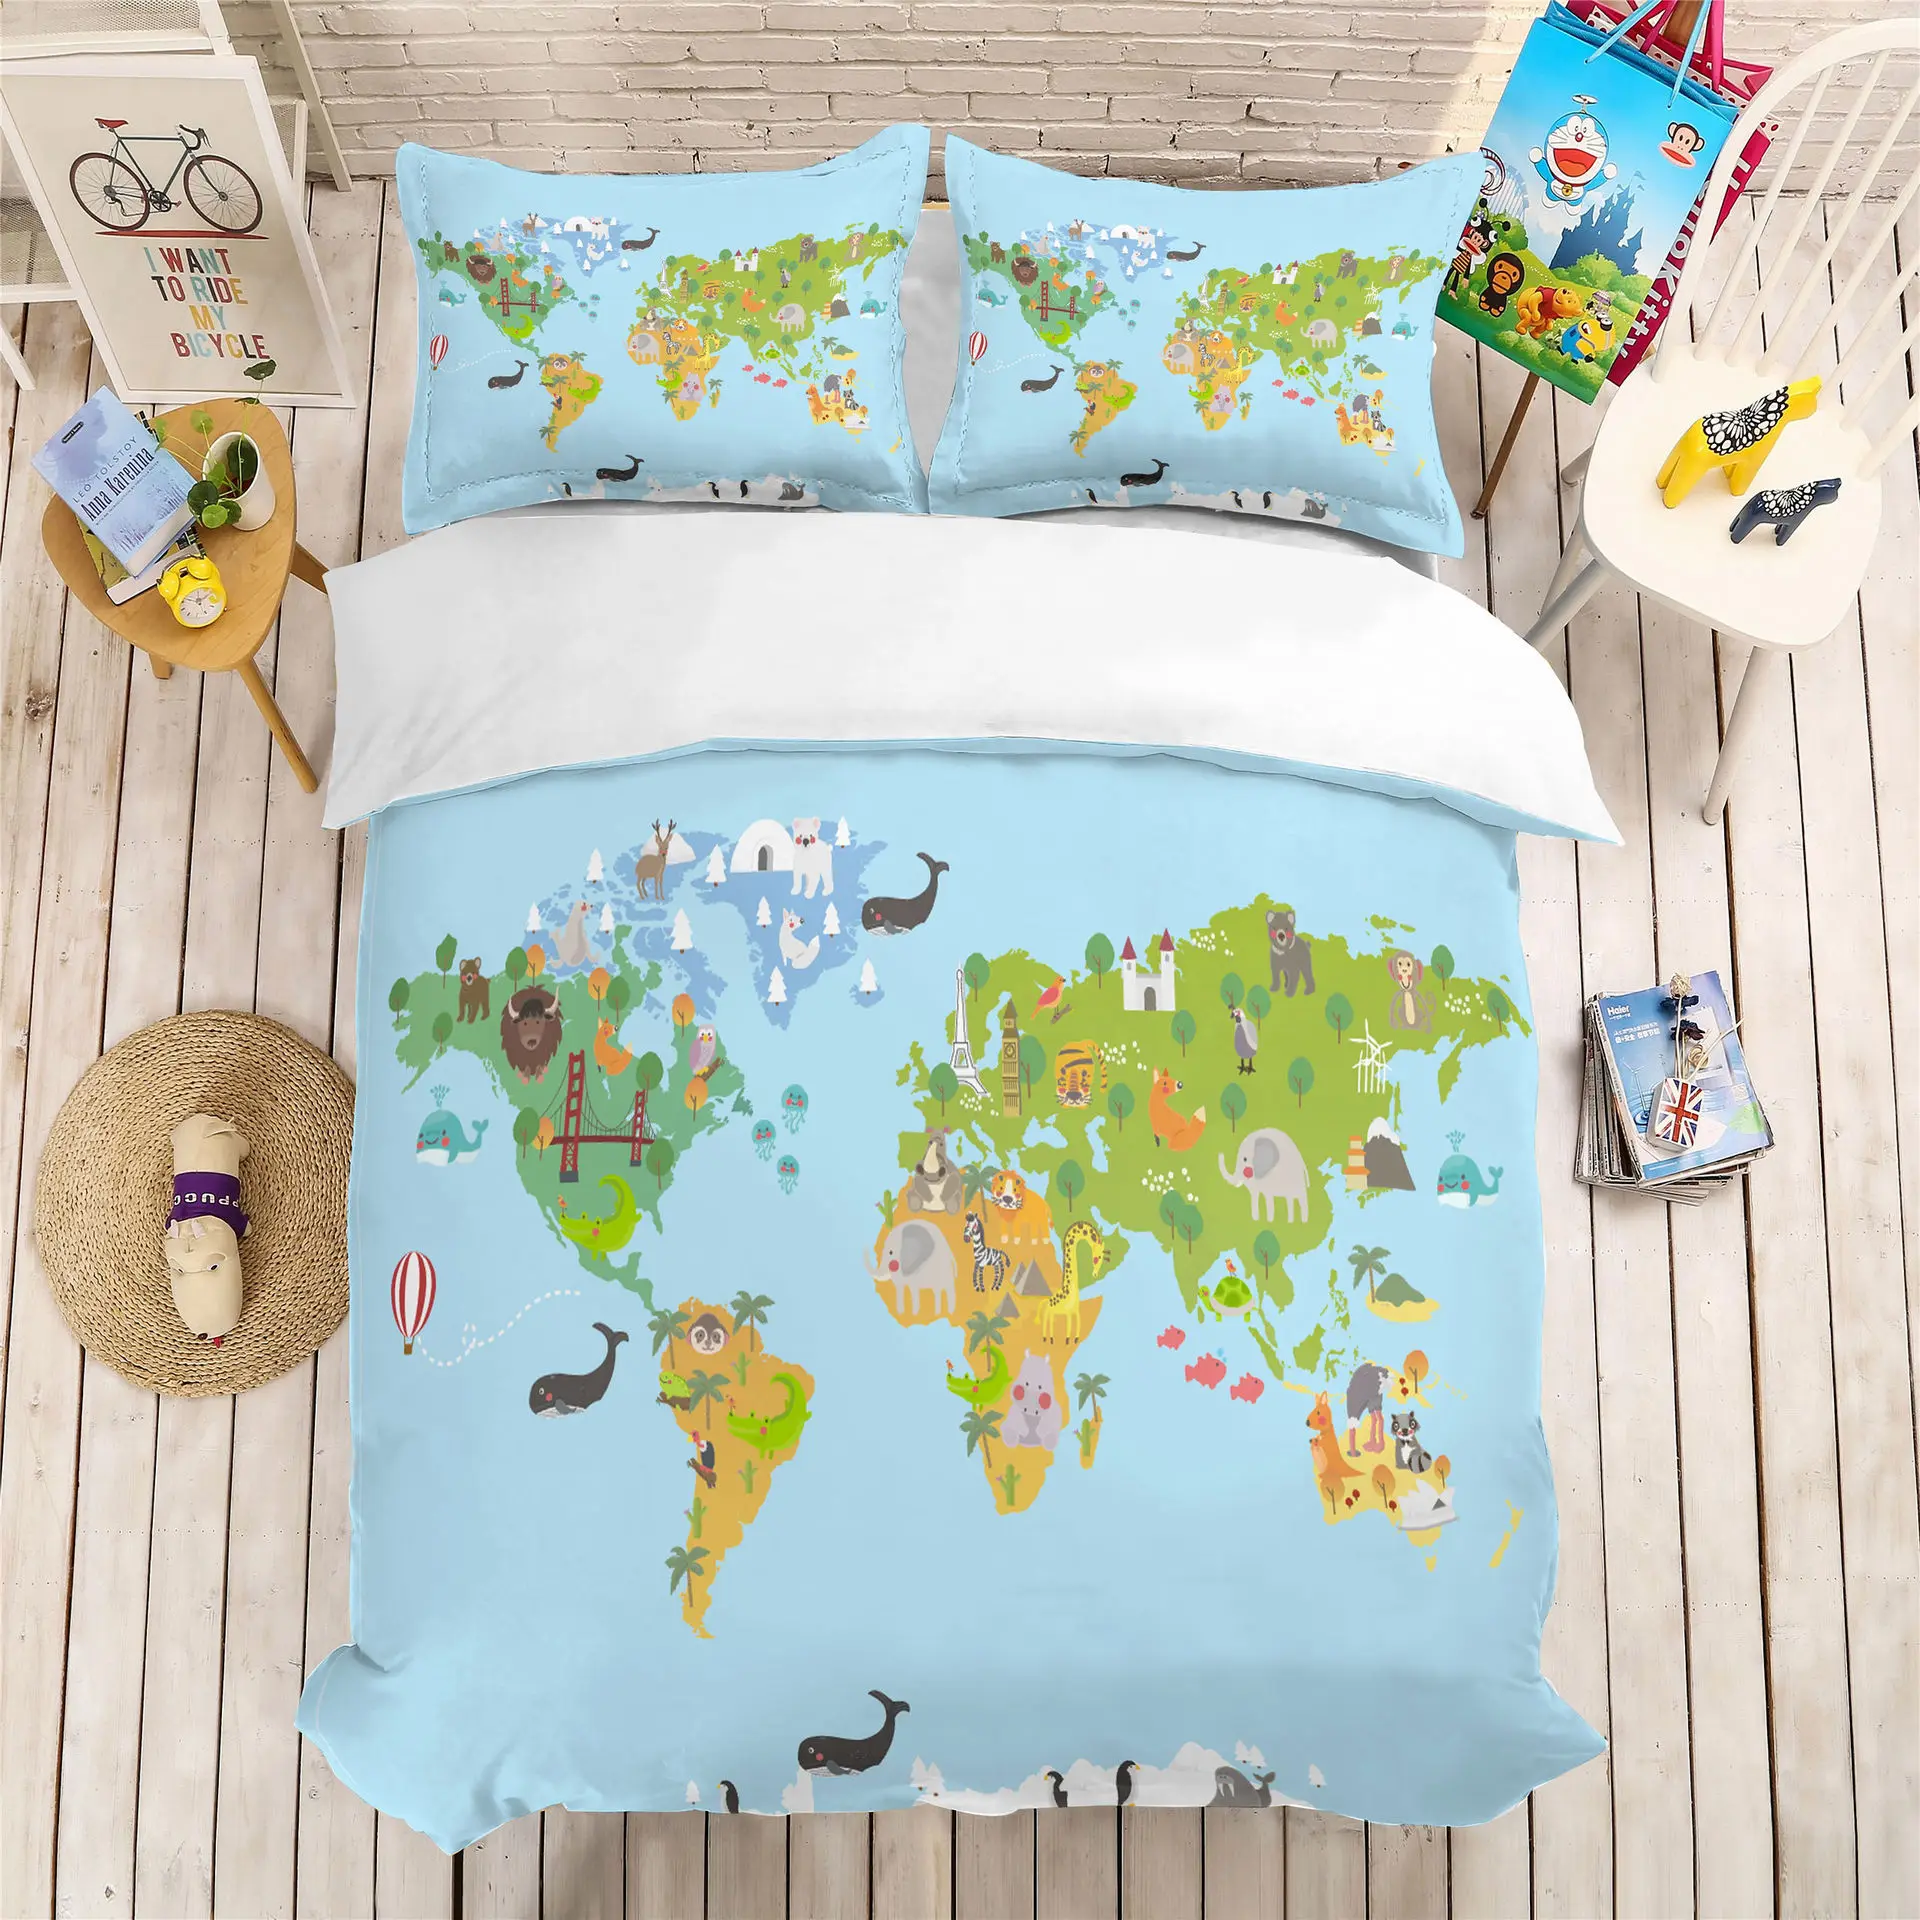 

Комплект постельного белья с картой мира, односпальный Комплект постельного белья, двуспальный комплект с трехмерным покрытием, картой мира, для детской спальни, с принтом 09